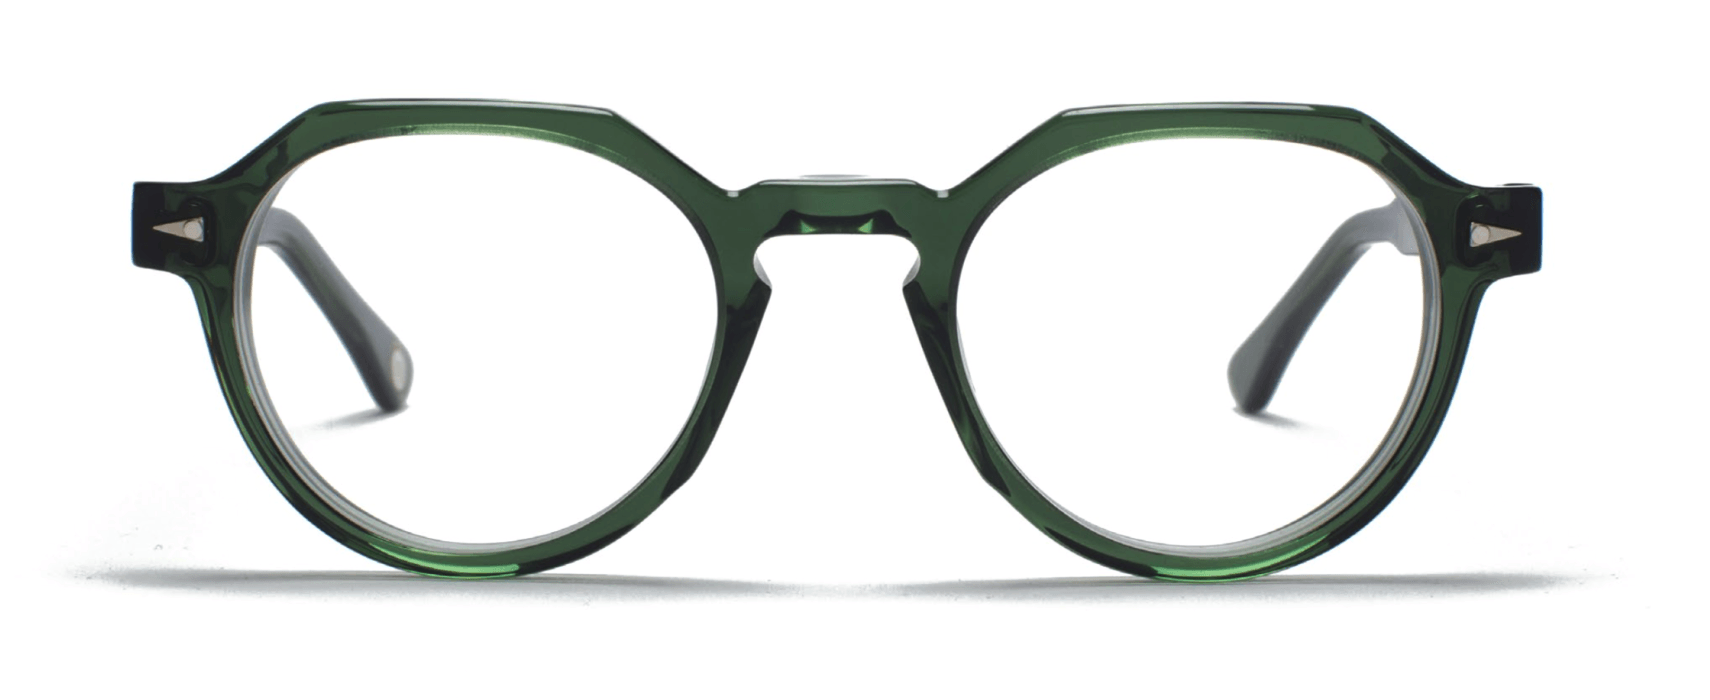 AHLEM glasses frame